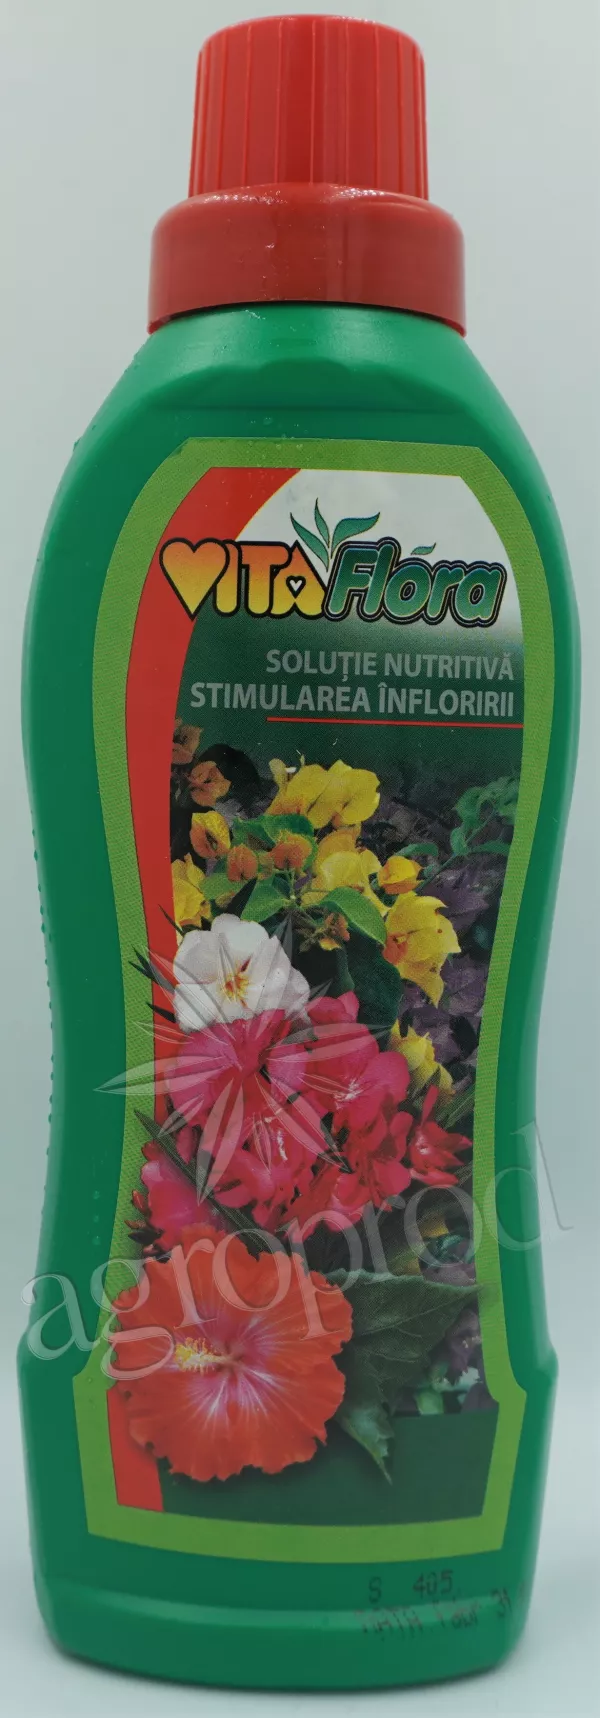 Vitaflora pentru stimularea infloririi 1L